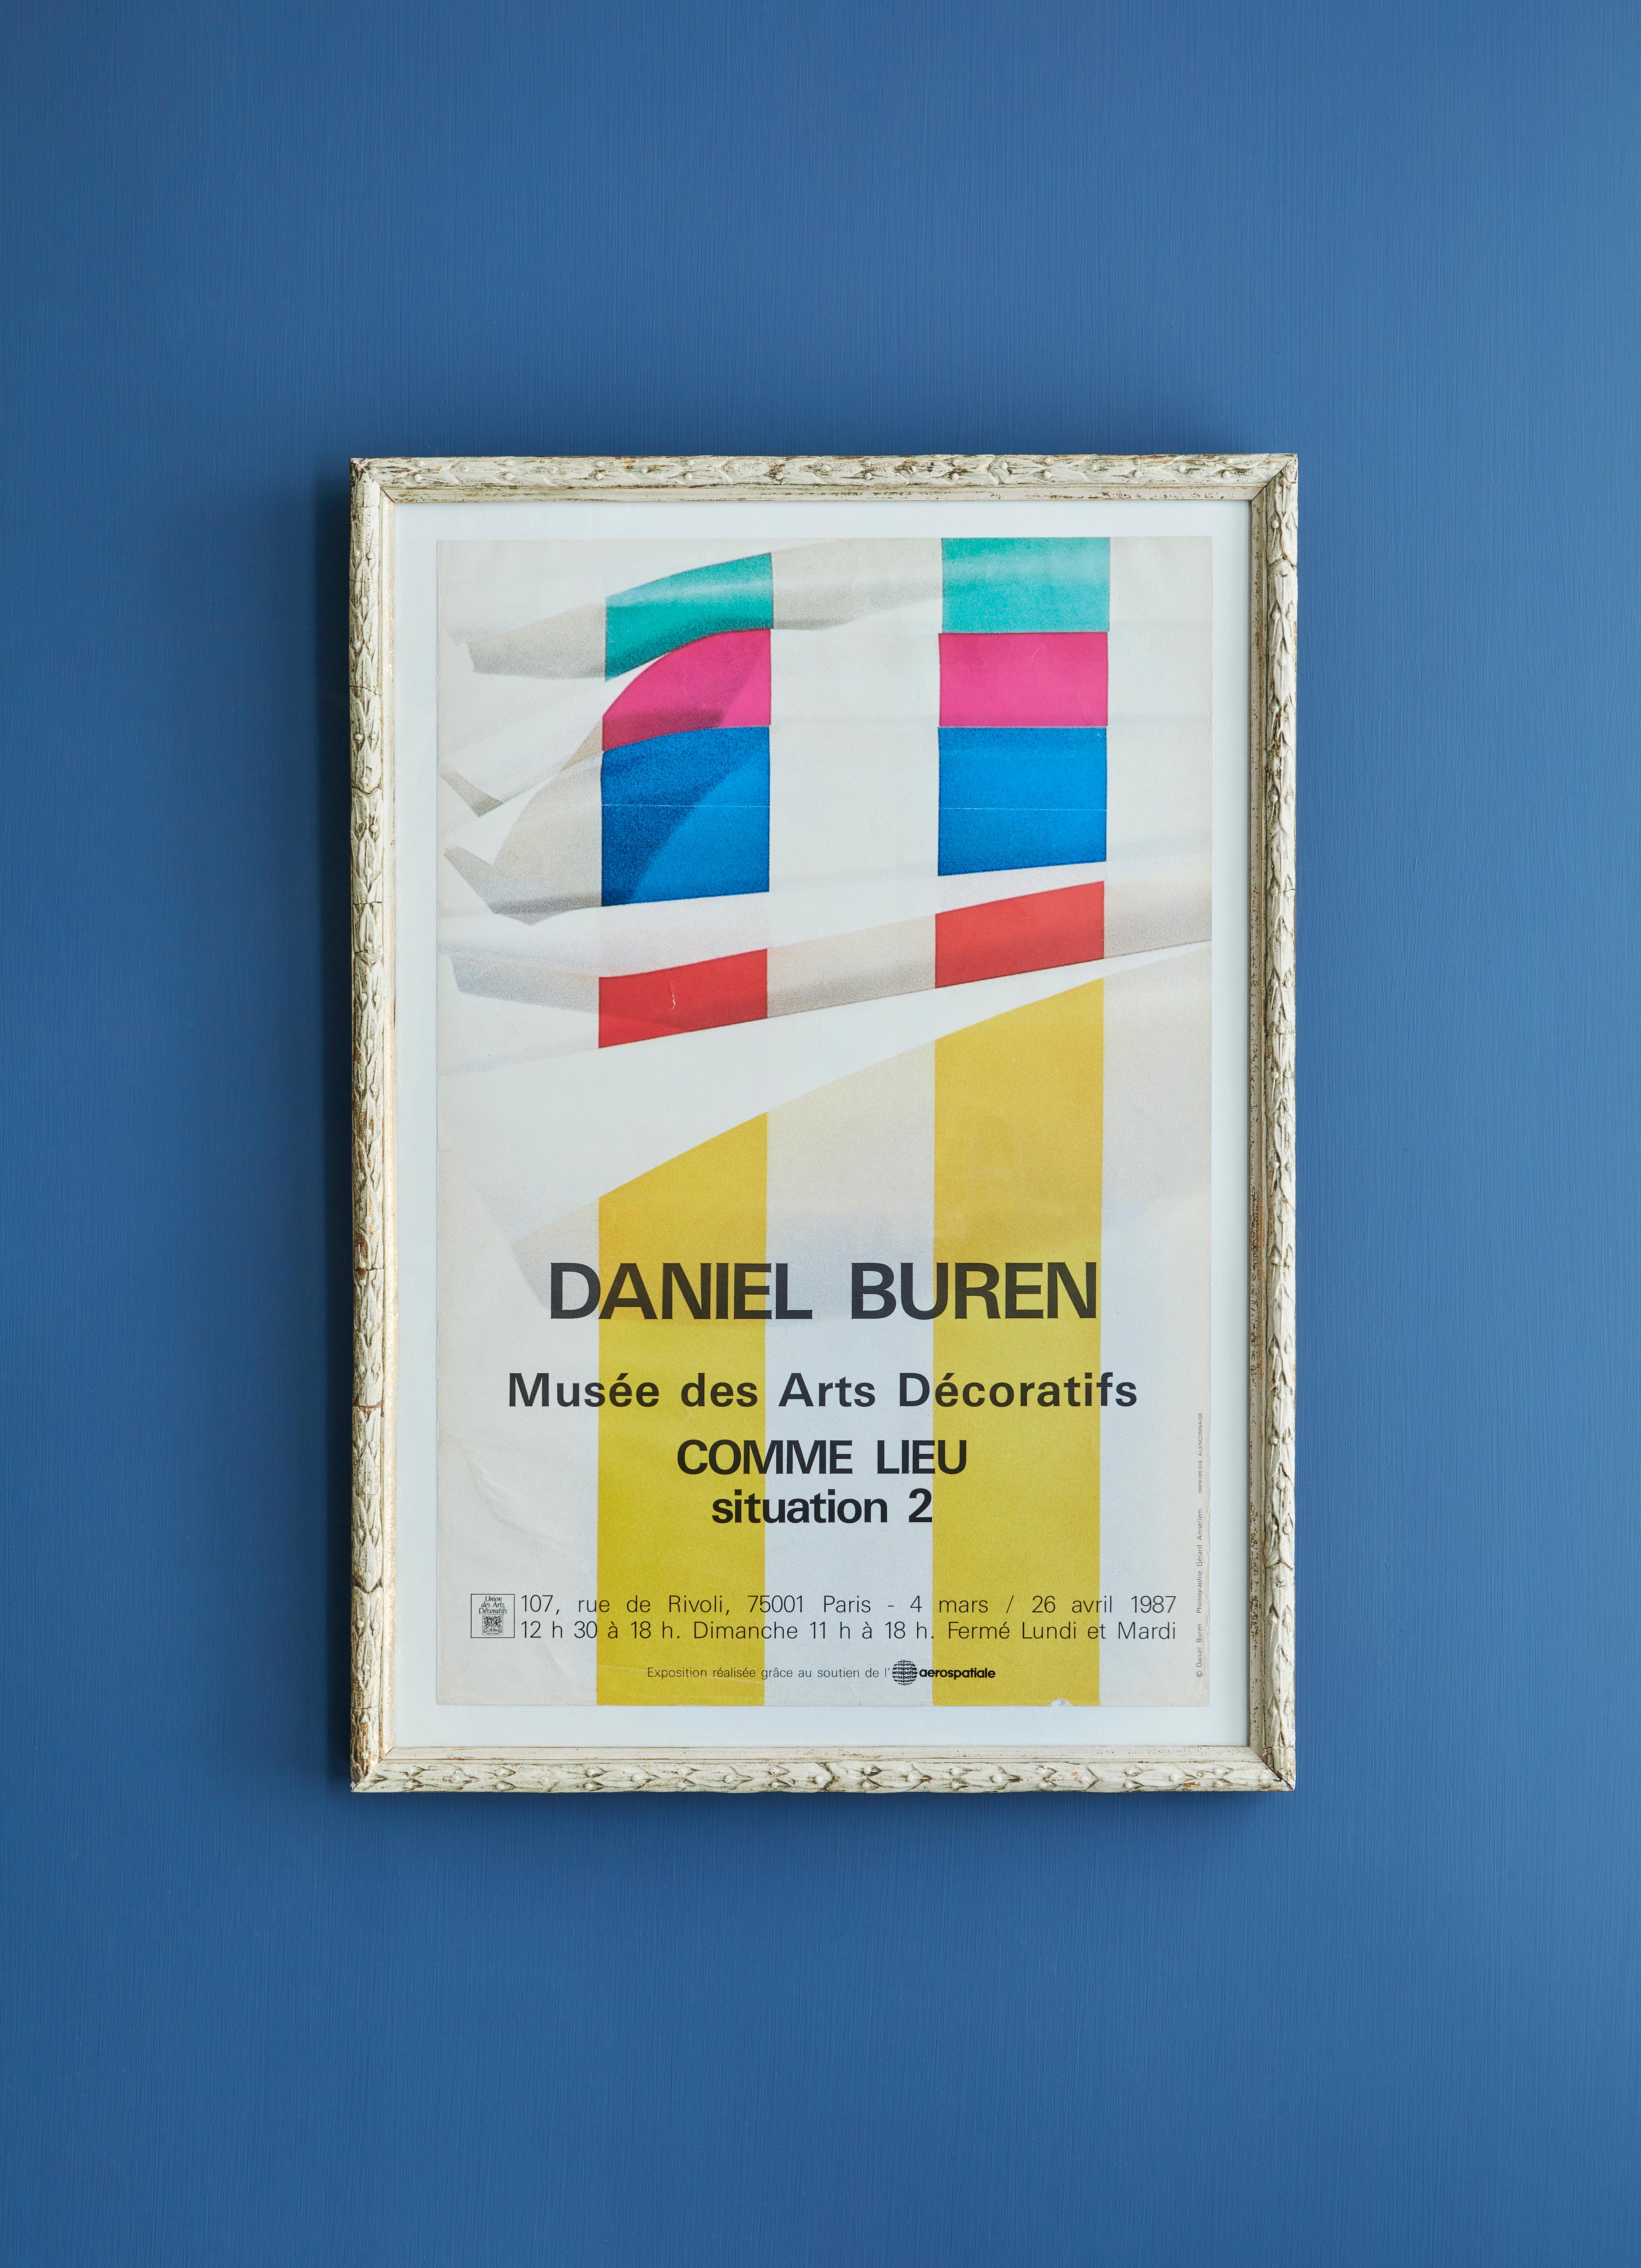 Daniel Buren,
France, 1987 

Rare affiche réalisée à l'occasion de l'exposition de Daniel Buren 